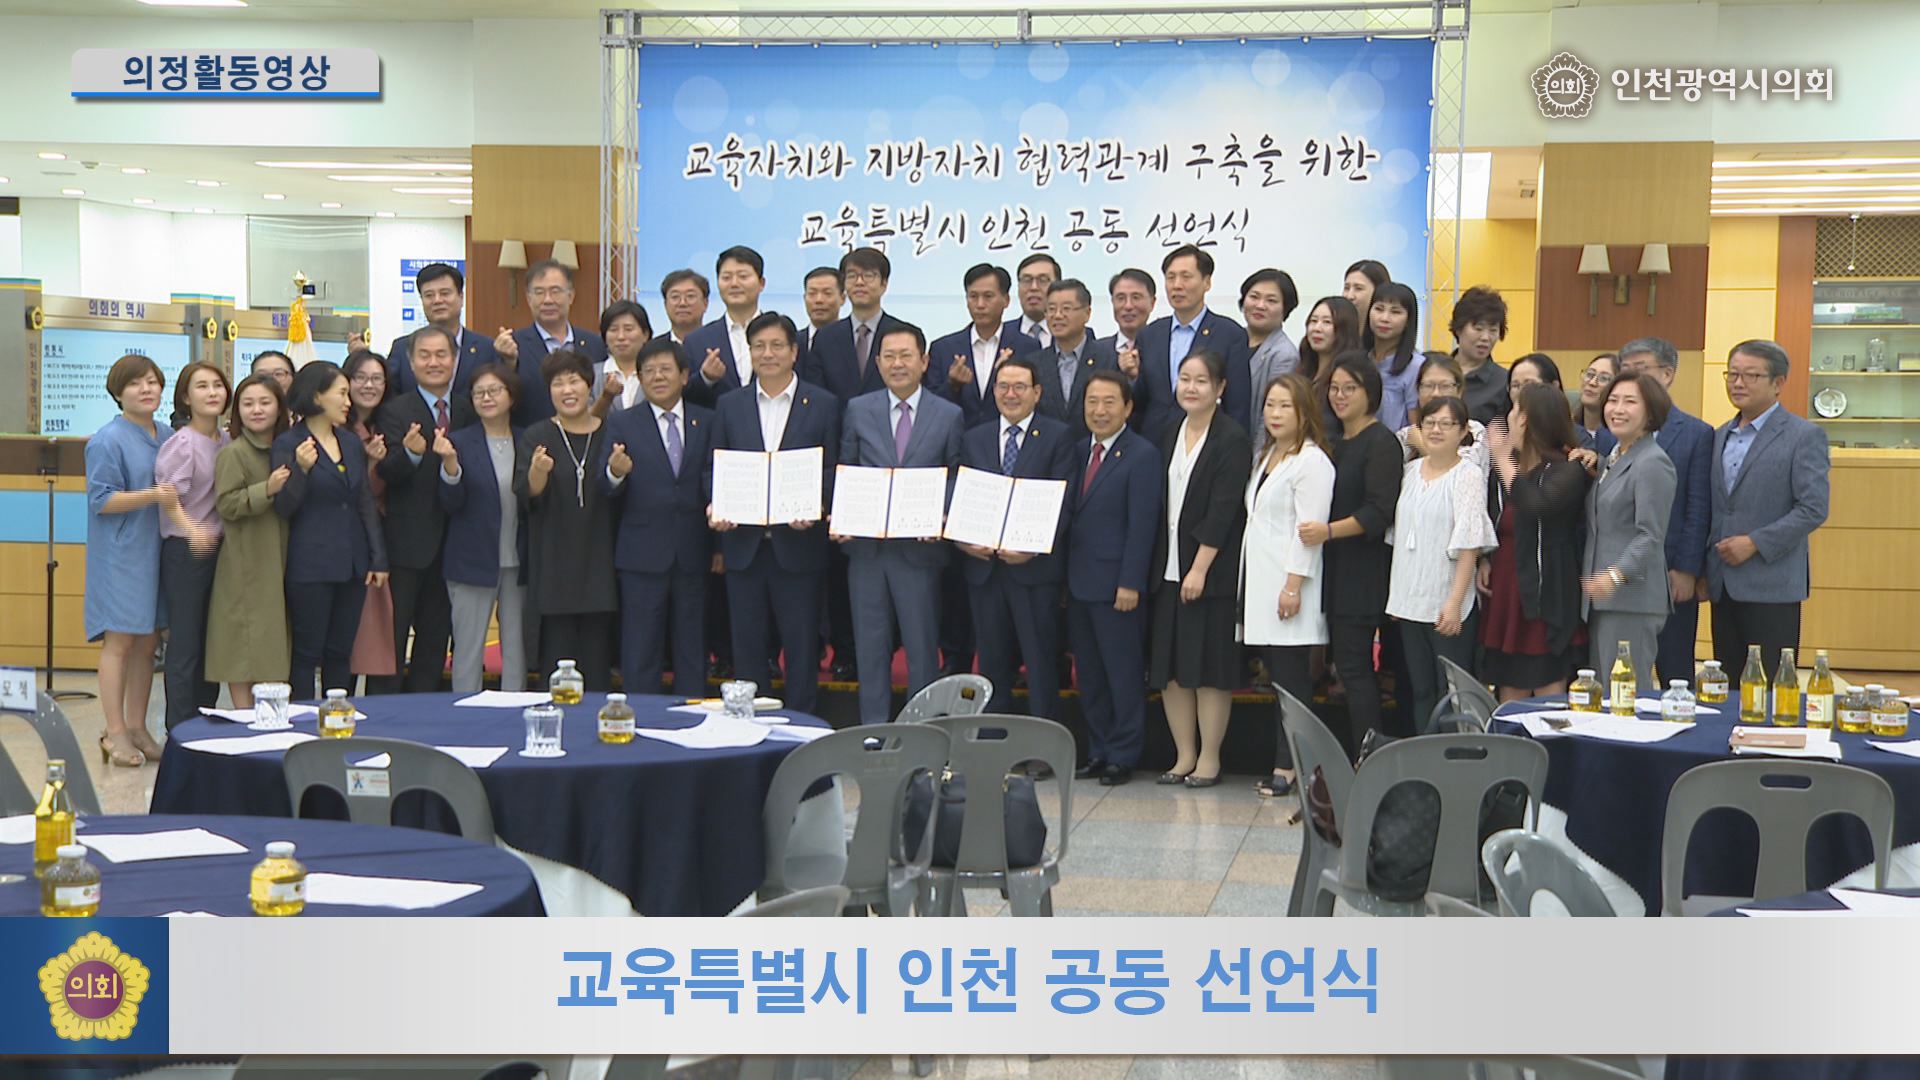 교육자치와 지방자치 협력관계 구축을 위한 교육특별시 인천공동선언식  사진